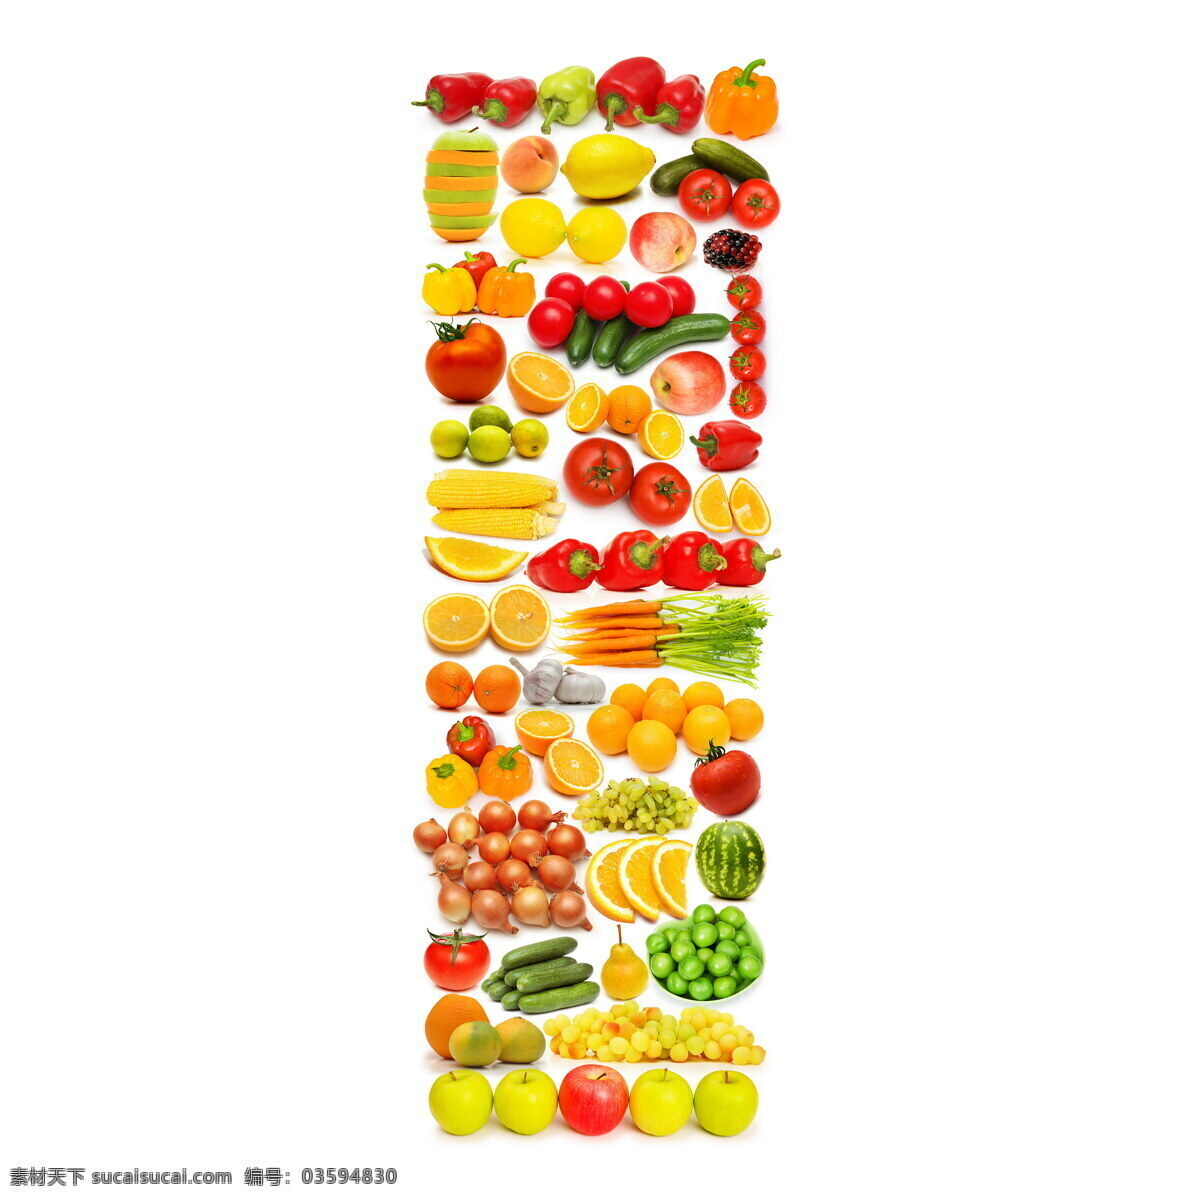 蔬菜水果 组成 字母 i 辣椒 葡萄 黄瓜 橙子 香蕉 蔬菜 水果 食物 水果蔬菜 餐饮美食 书画文字 文化艺术 白色